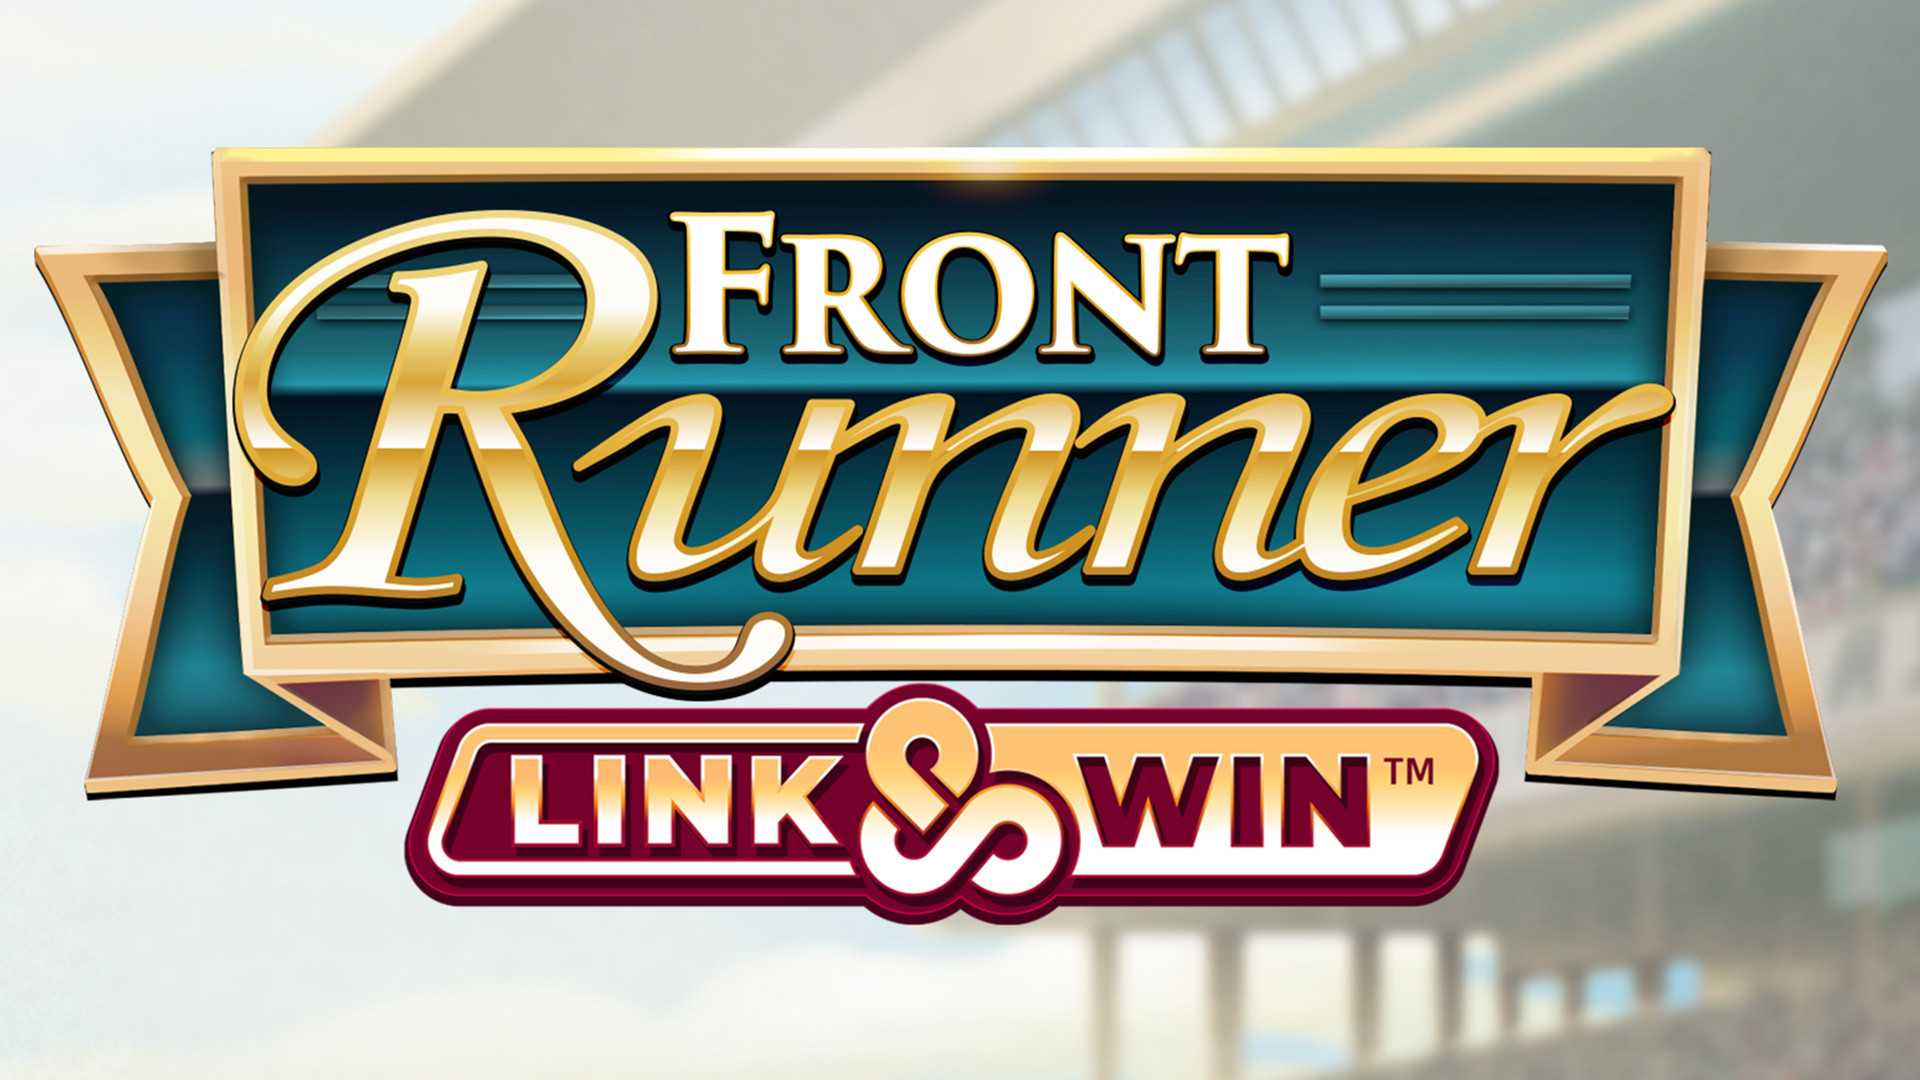 Front Runner Link&Win